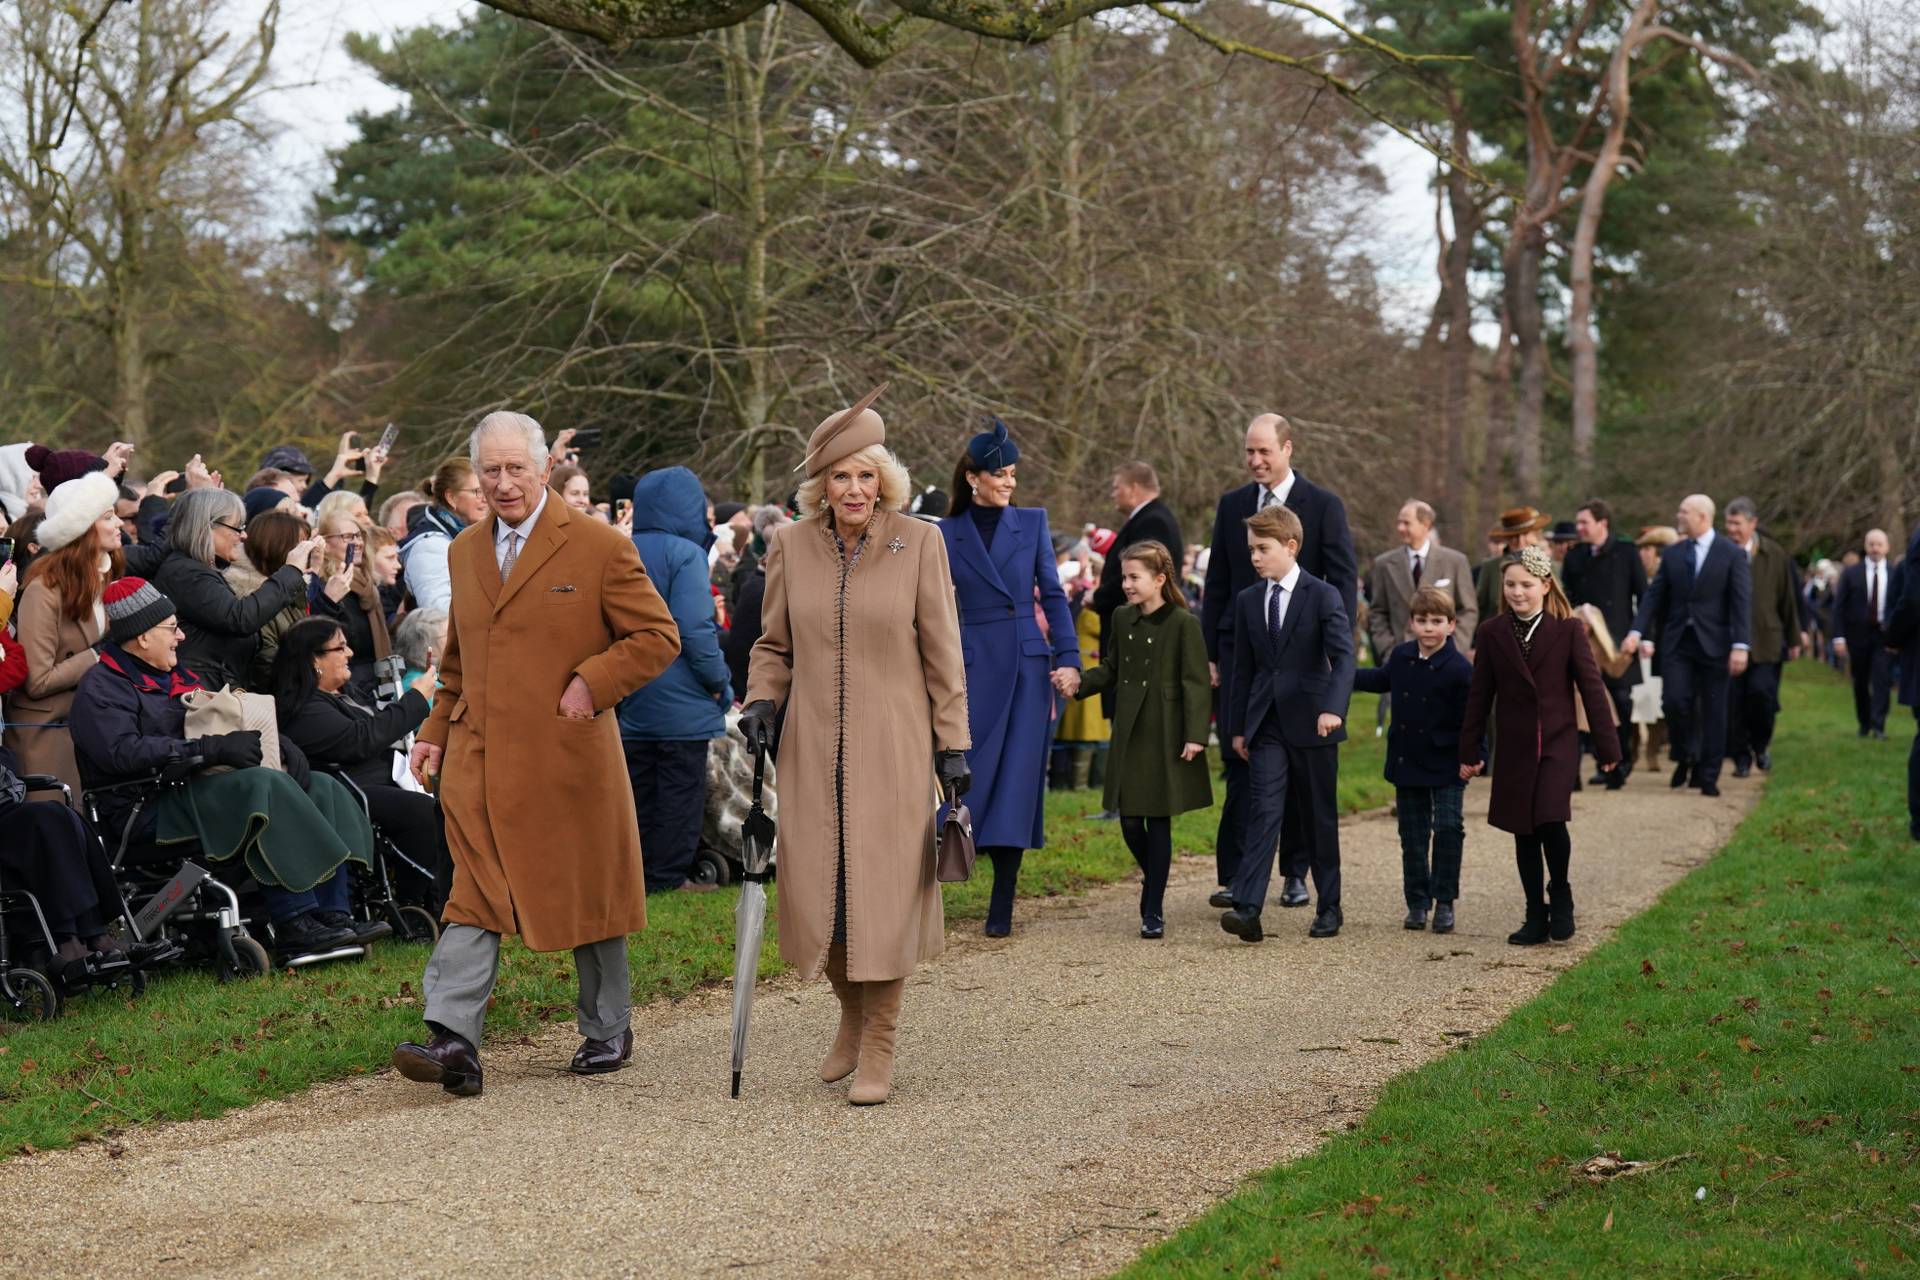 A karácsonyi misére menet fotózták le az angol királyi családot: a kis Lajos herceg hatalmas mosollyal lopta el a show-t